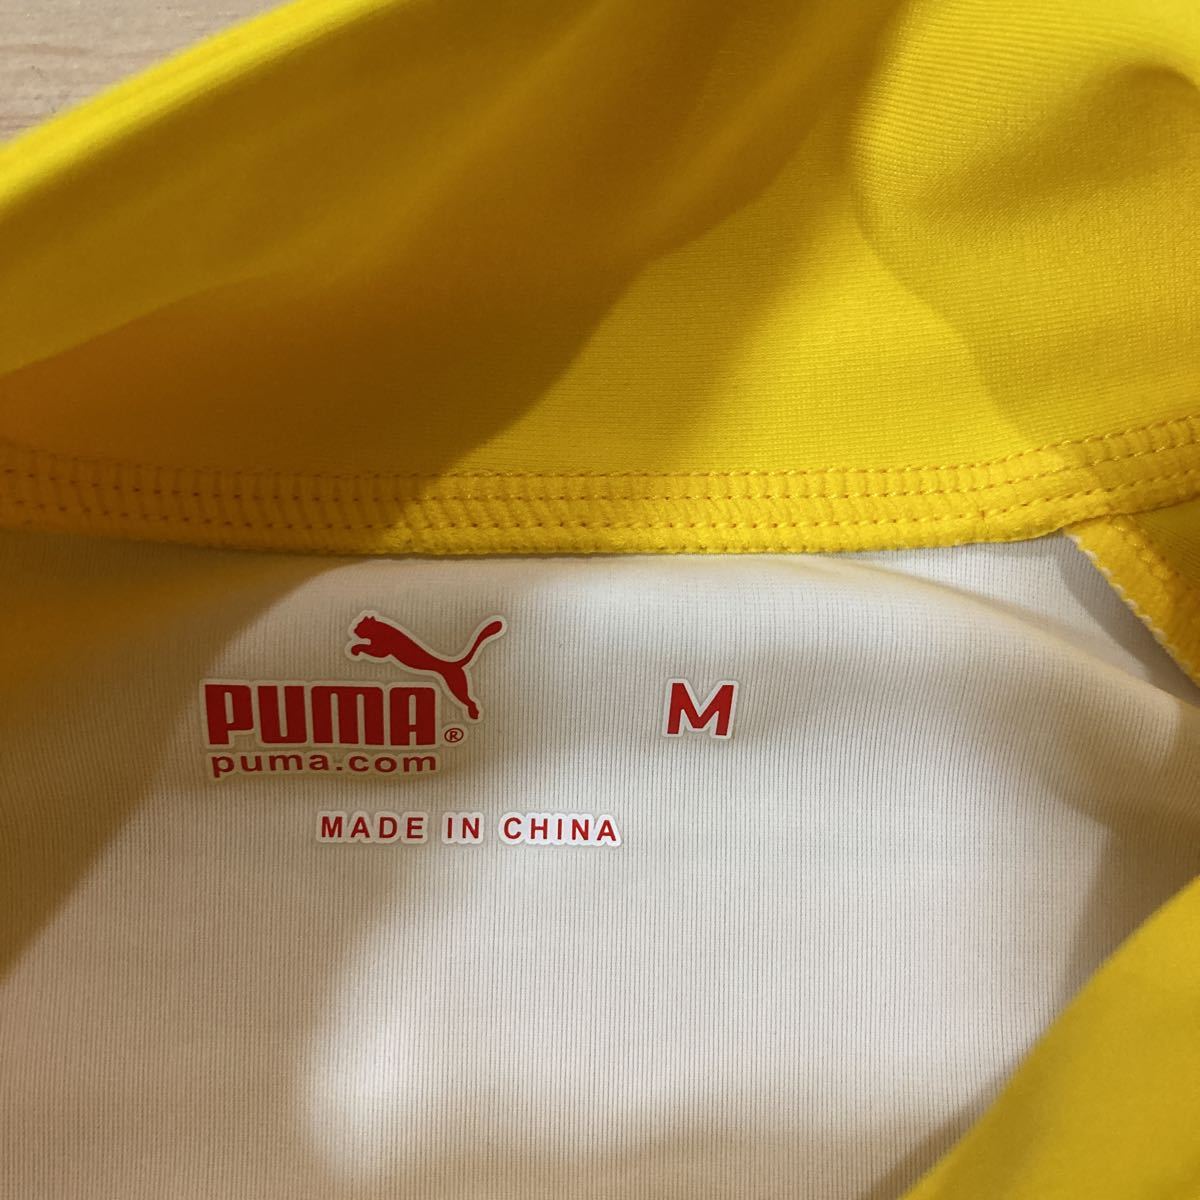 PUMA Puma купальный костюм Rush Guard верх и низ в комплекте выставить M размер желтый цвет белый женский 